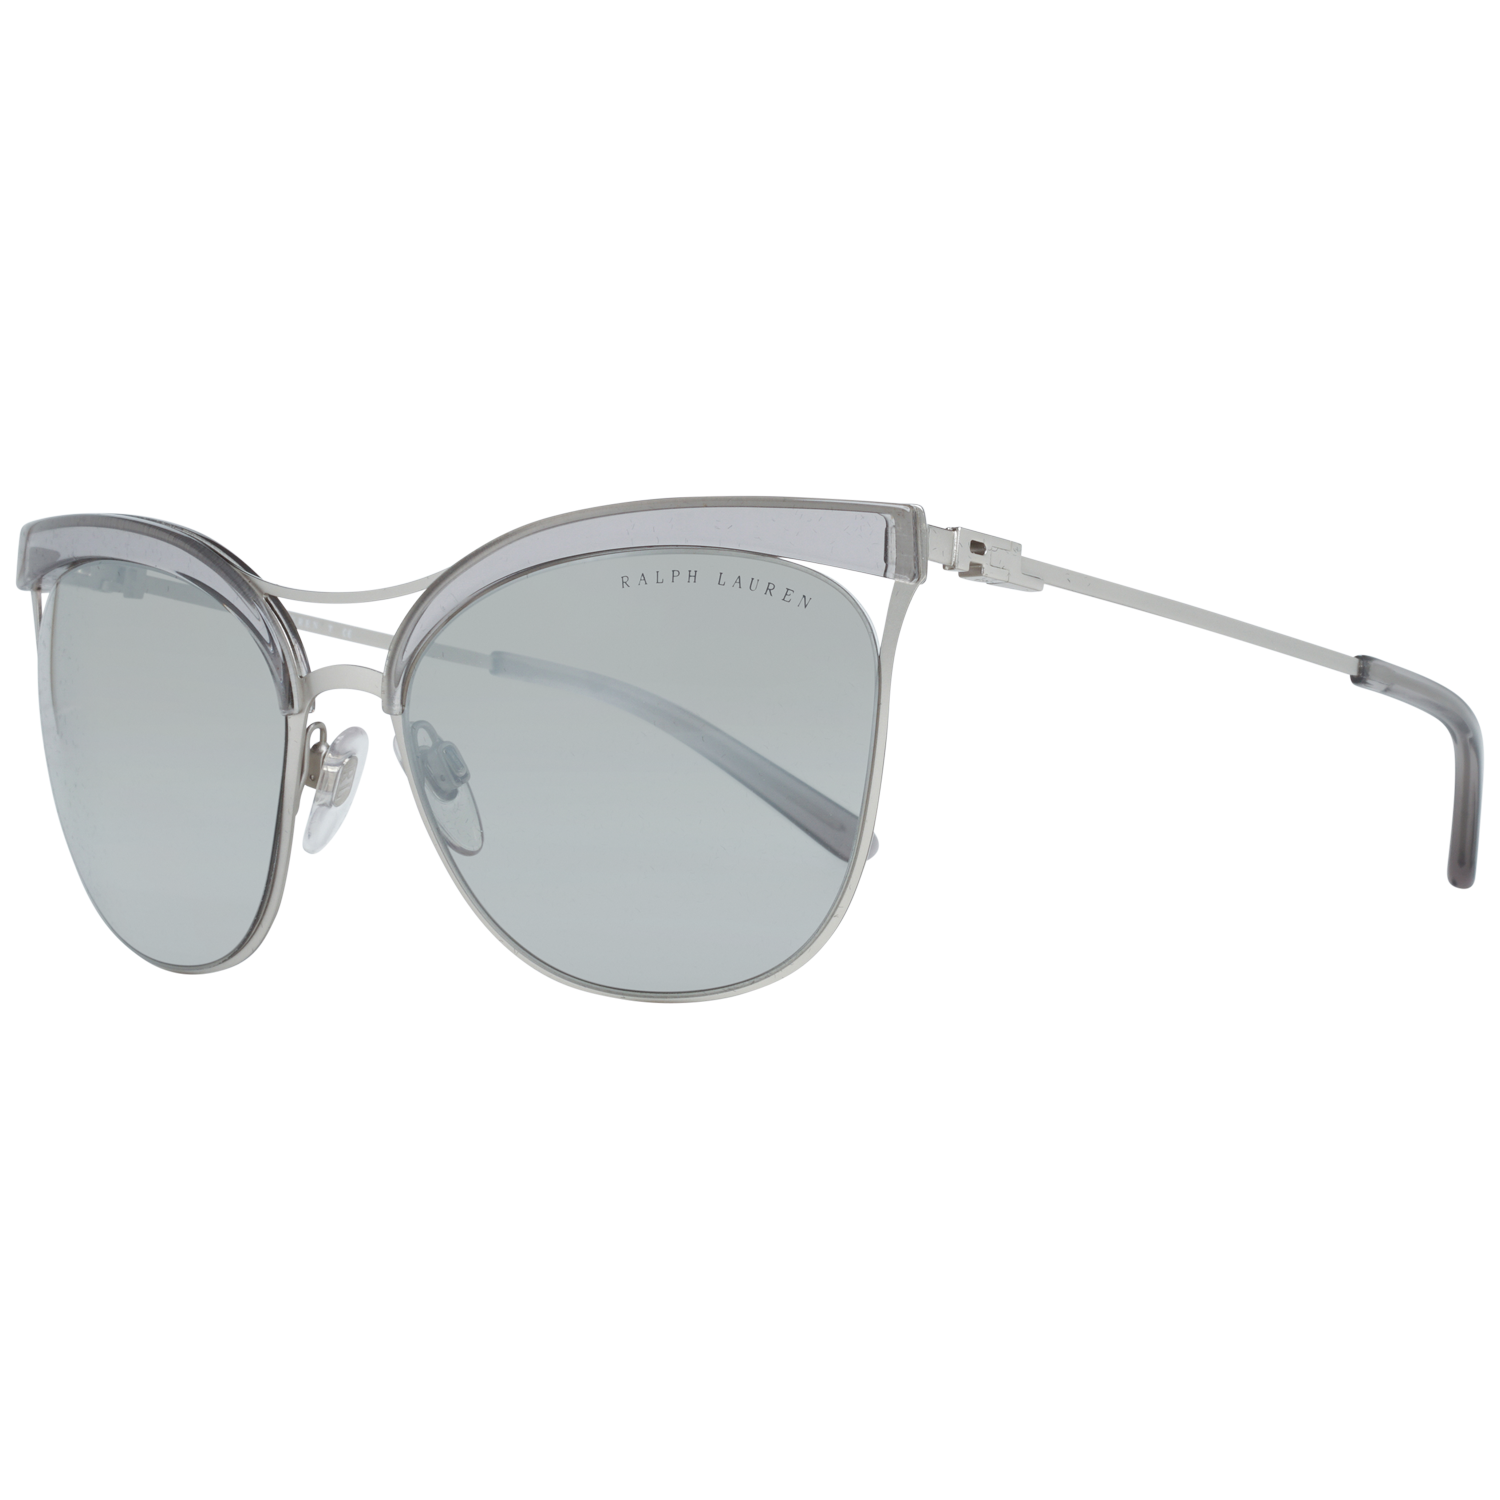 Ralph Lauren Sunglasses RL7061 93556V 56 Silver